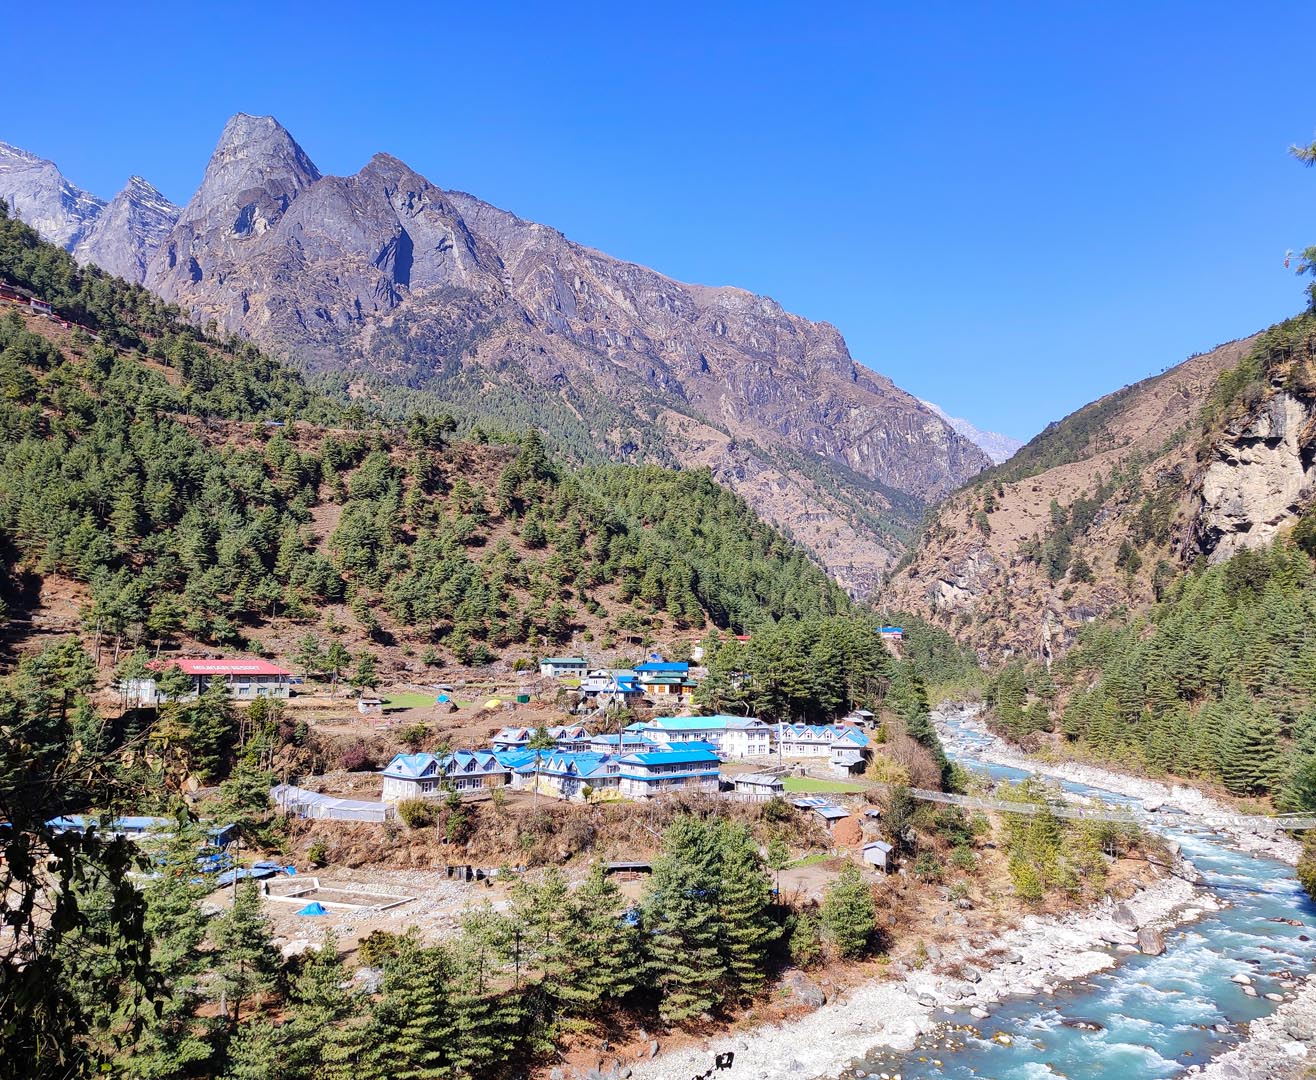 View upon reaching Phakding village